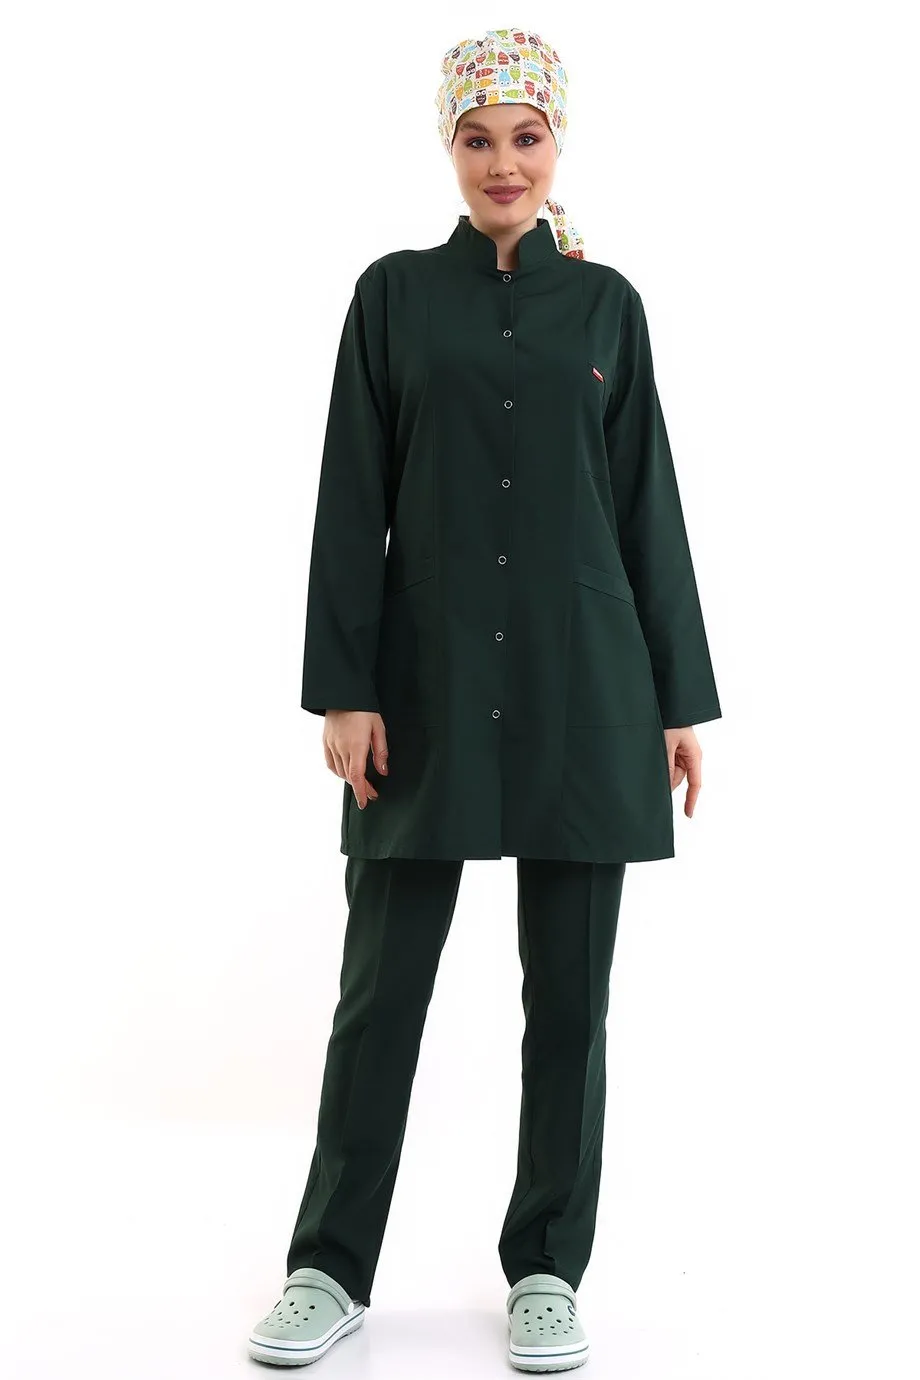 Tesettür Forma Takımı Full Çıtçıt - 5518 Bahar Ördek Başı Yeşili